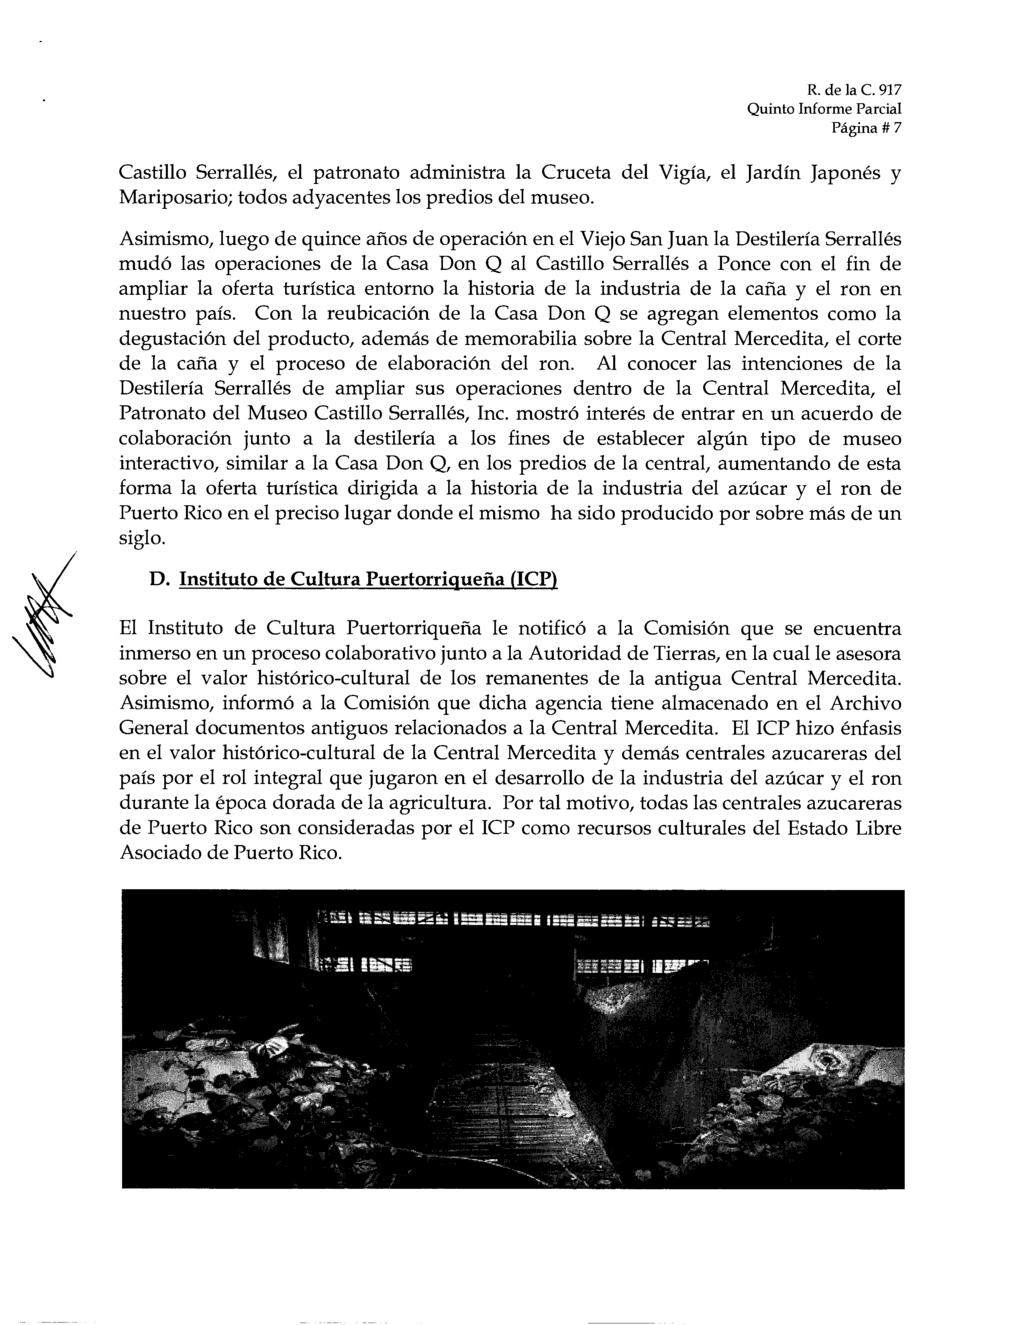 Pagina # 7 Castillo Serralles, el patronato administra la Cruceta del Vigia, el Jardin Japones y Mariposario; todos adyacentes los predios del museo.